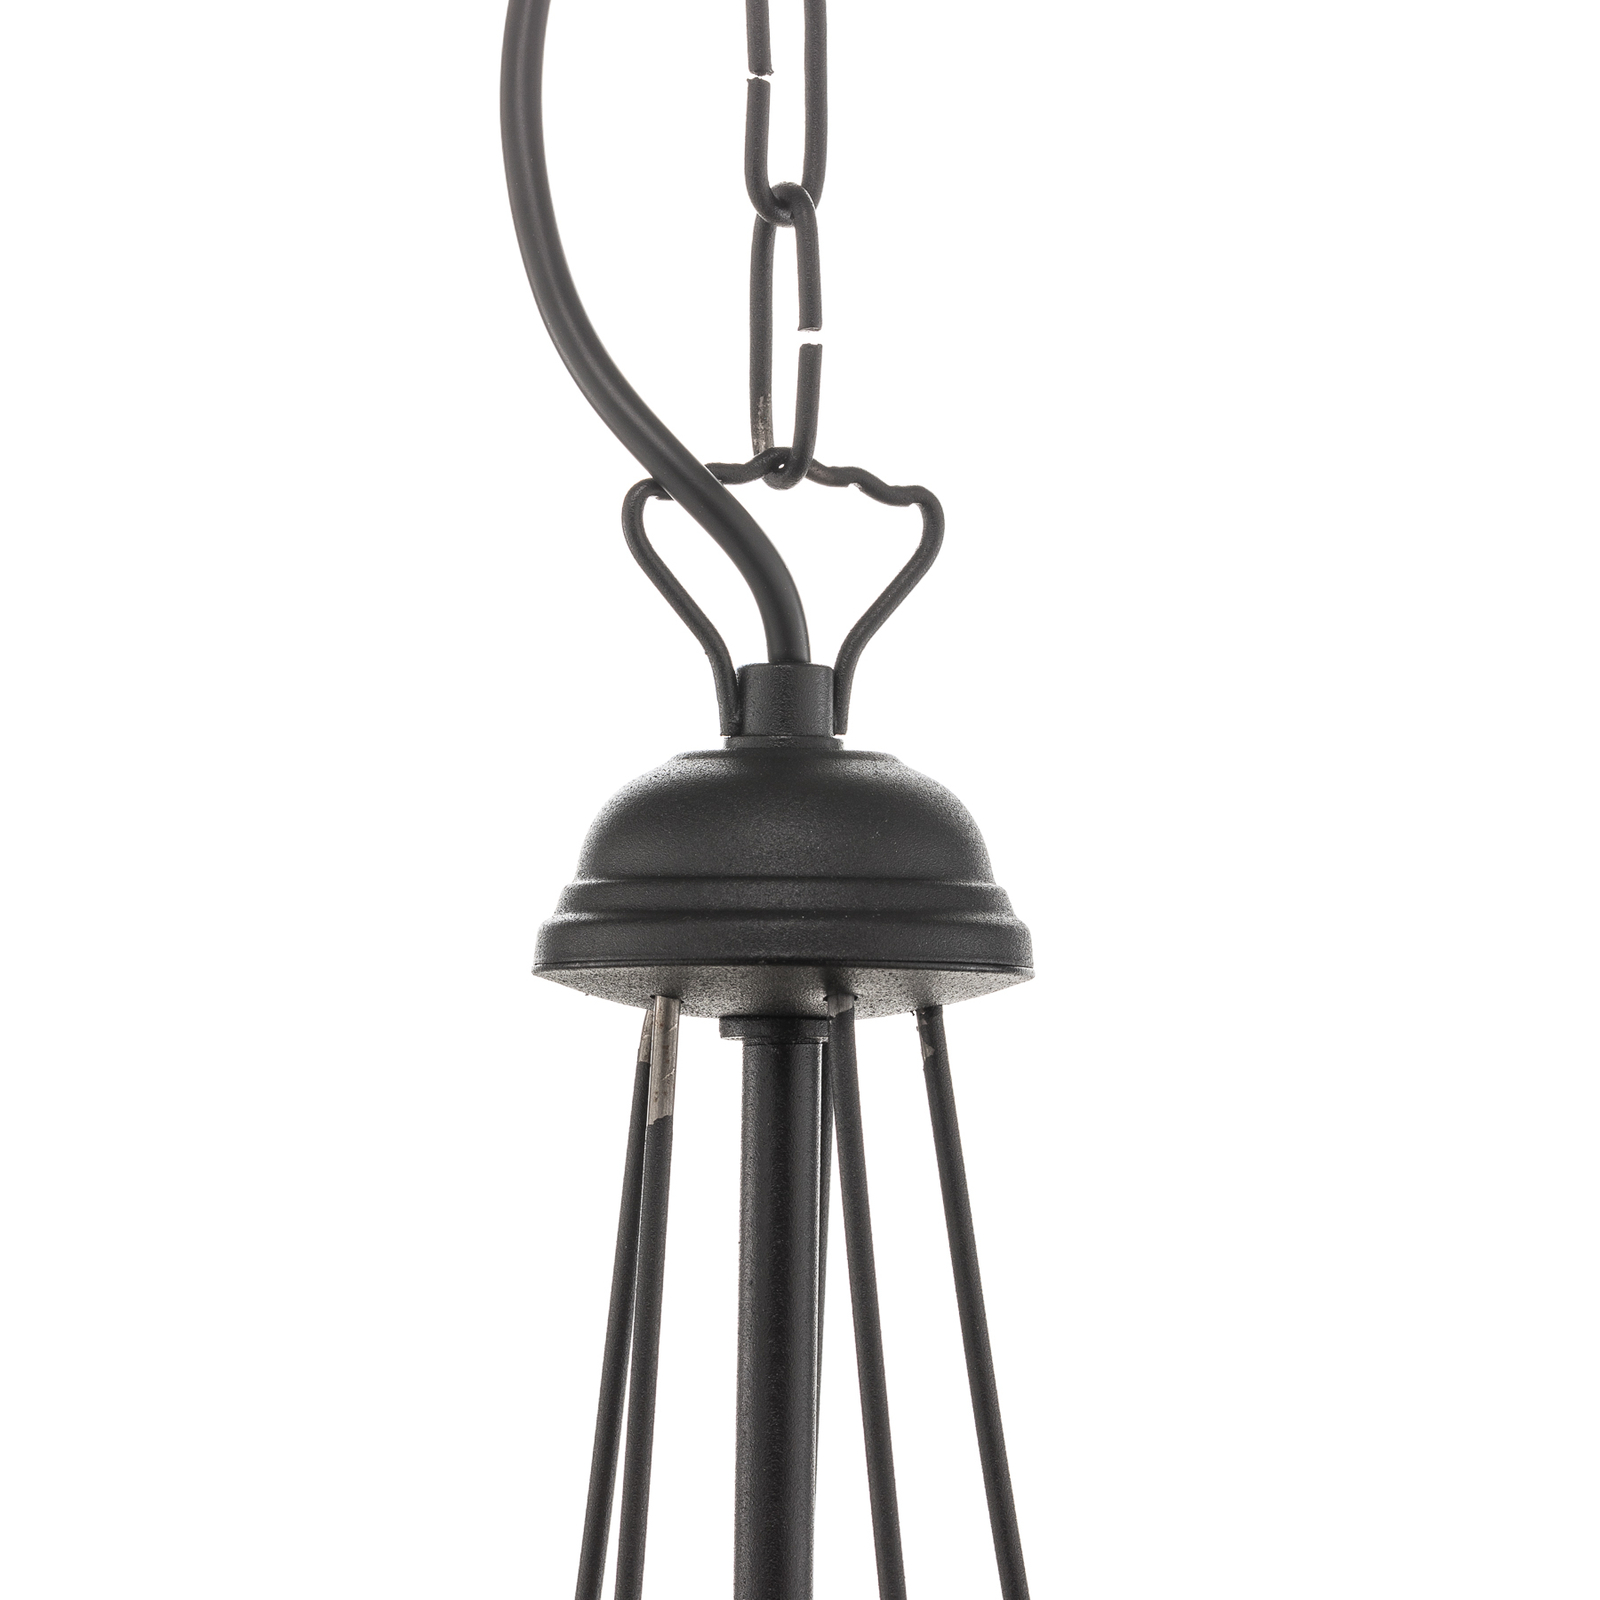 Malbo 5-bulb chandelier in black